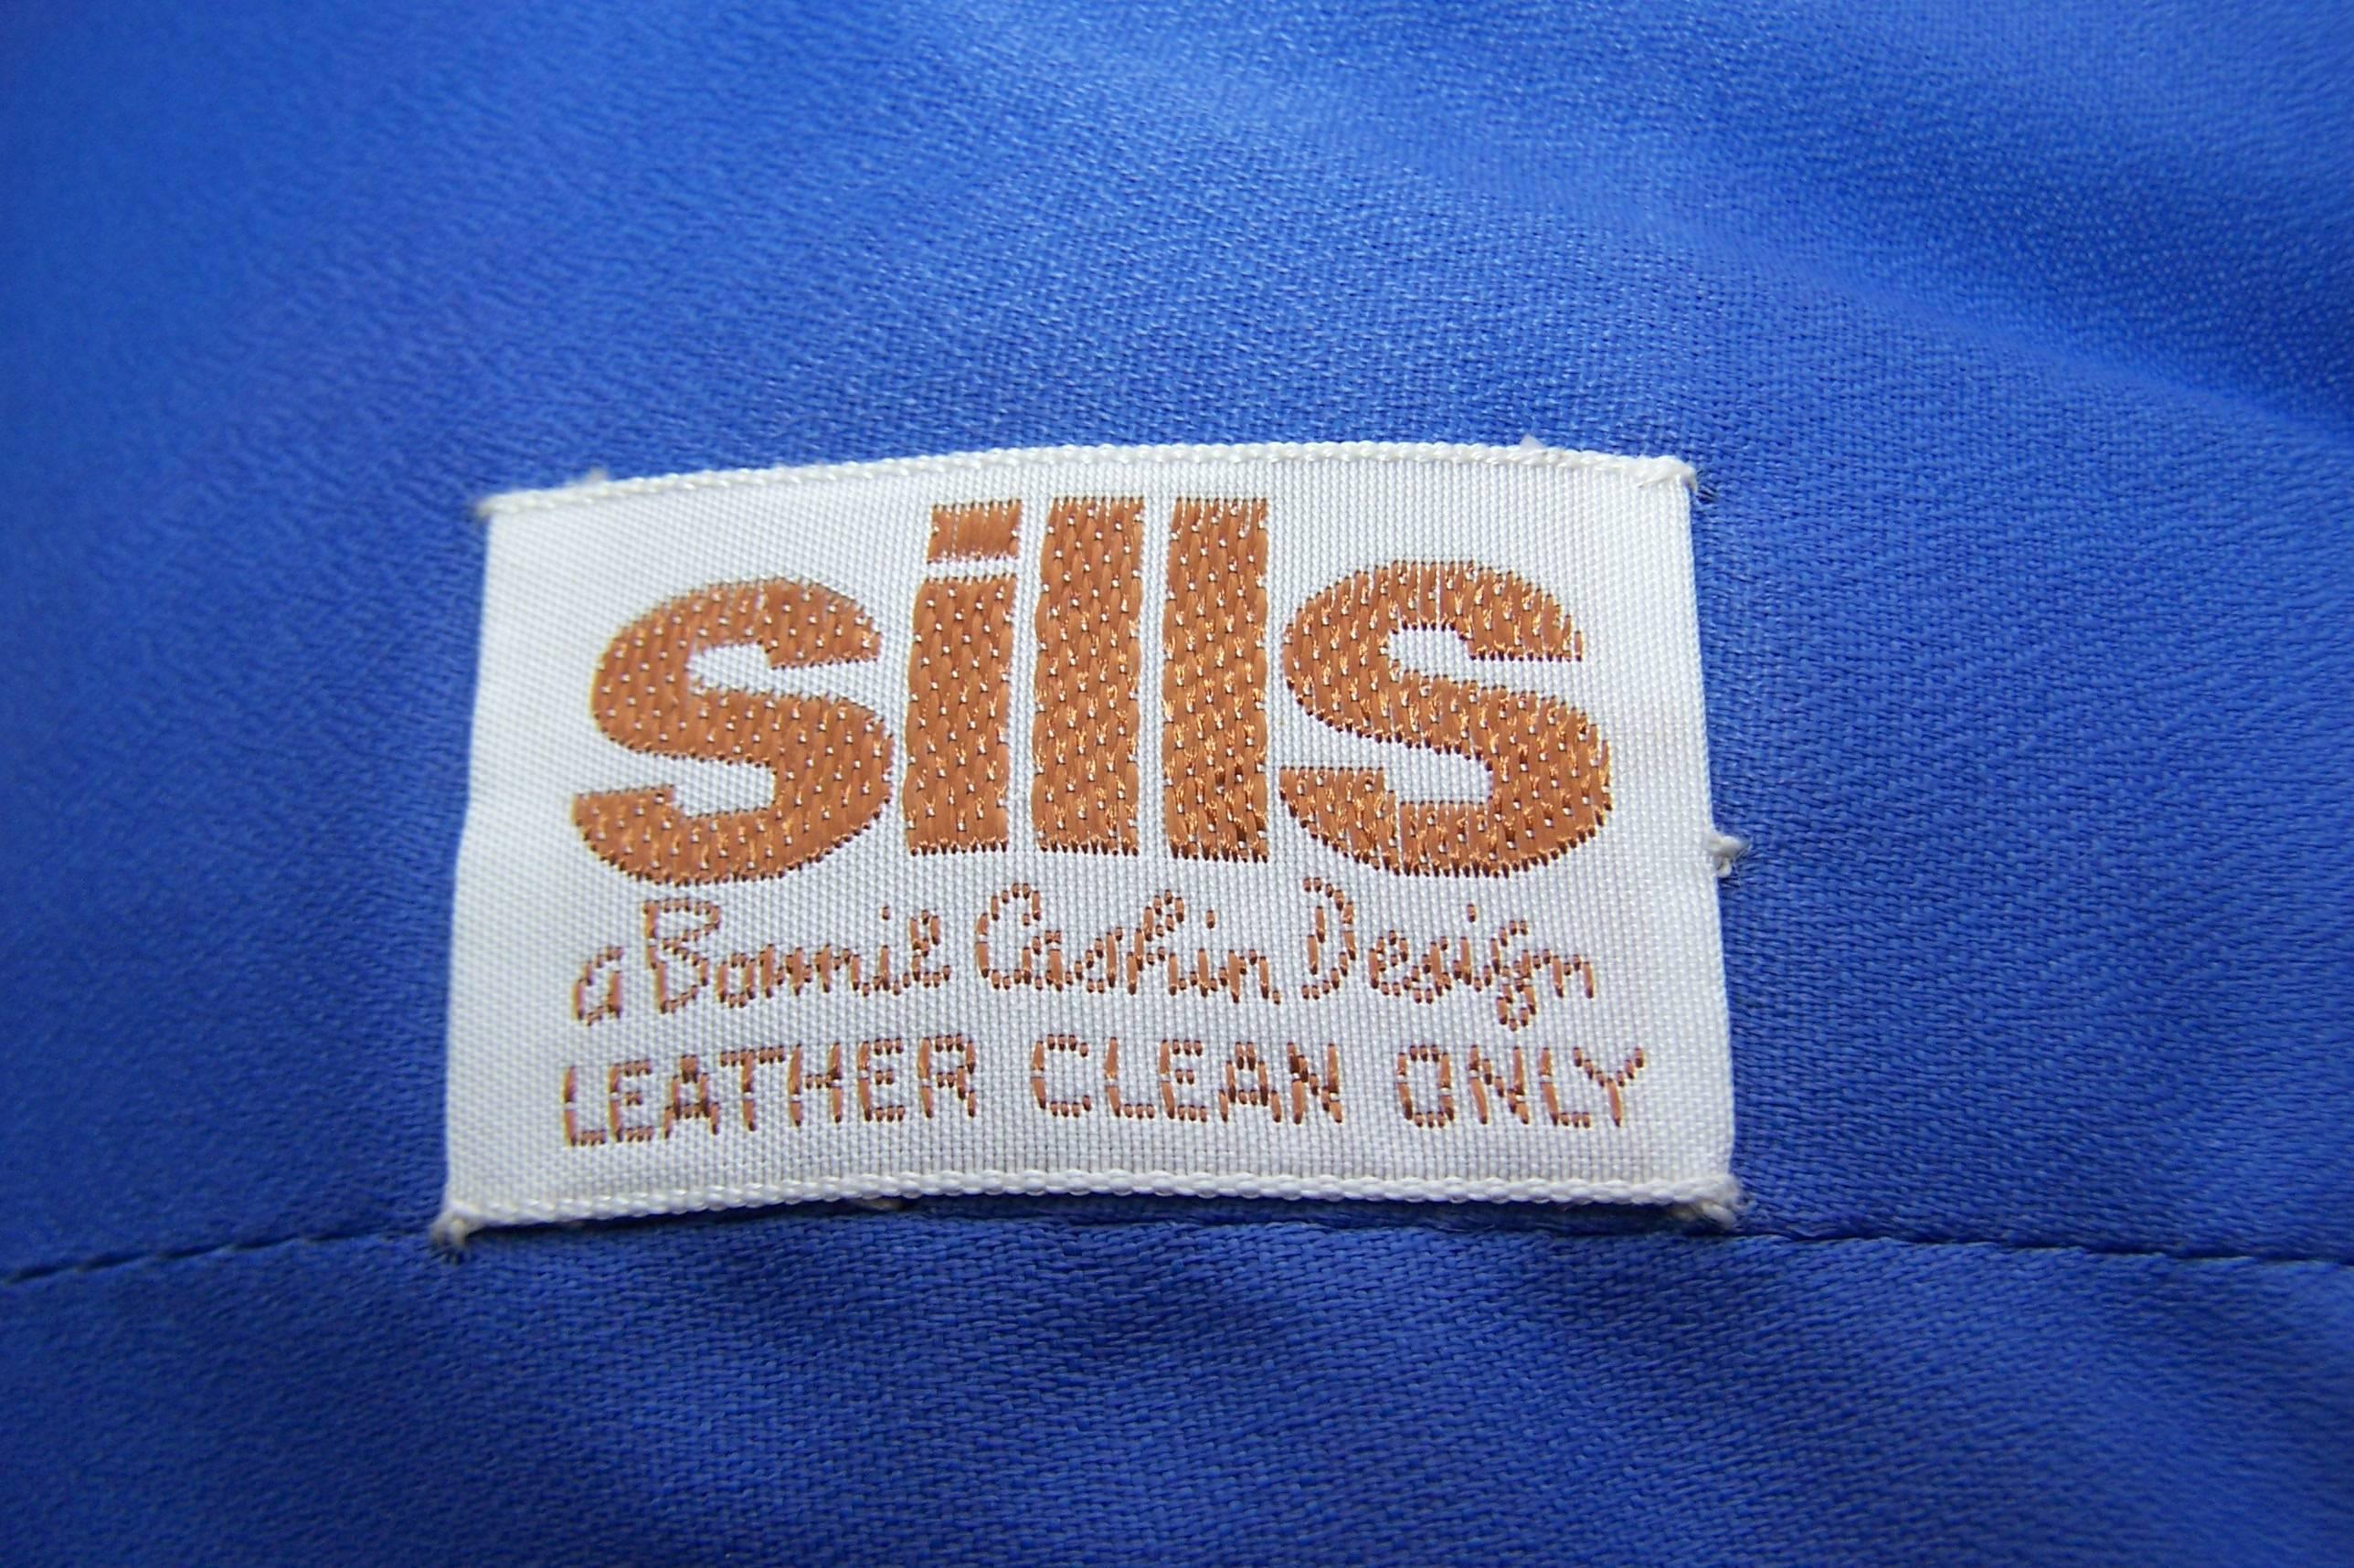 c.1970 Bonnie Cashin Mandarin Style Leather Jacket 4